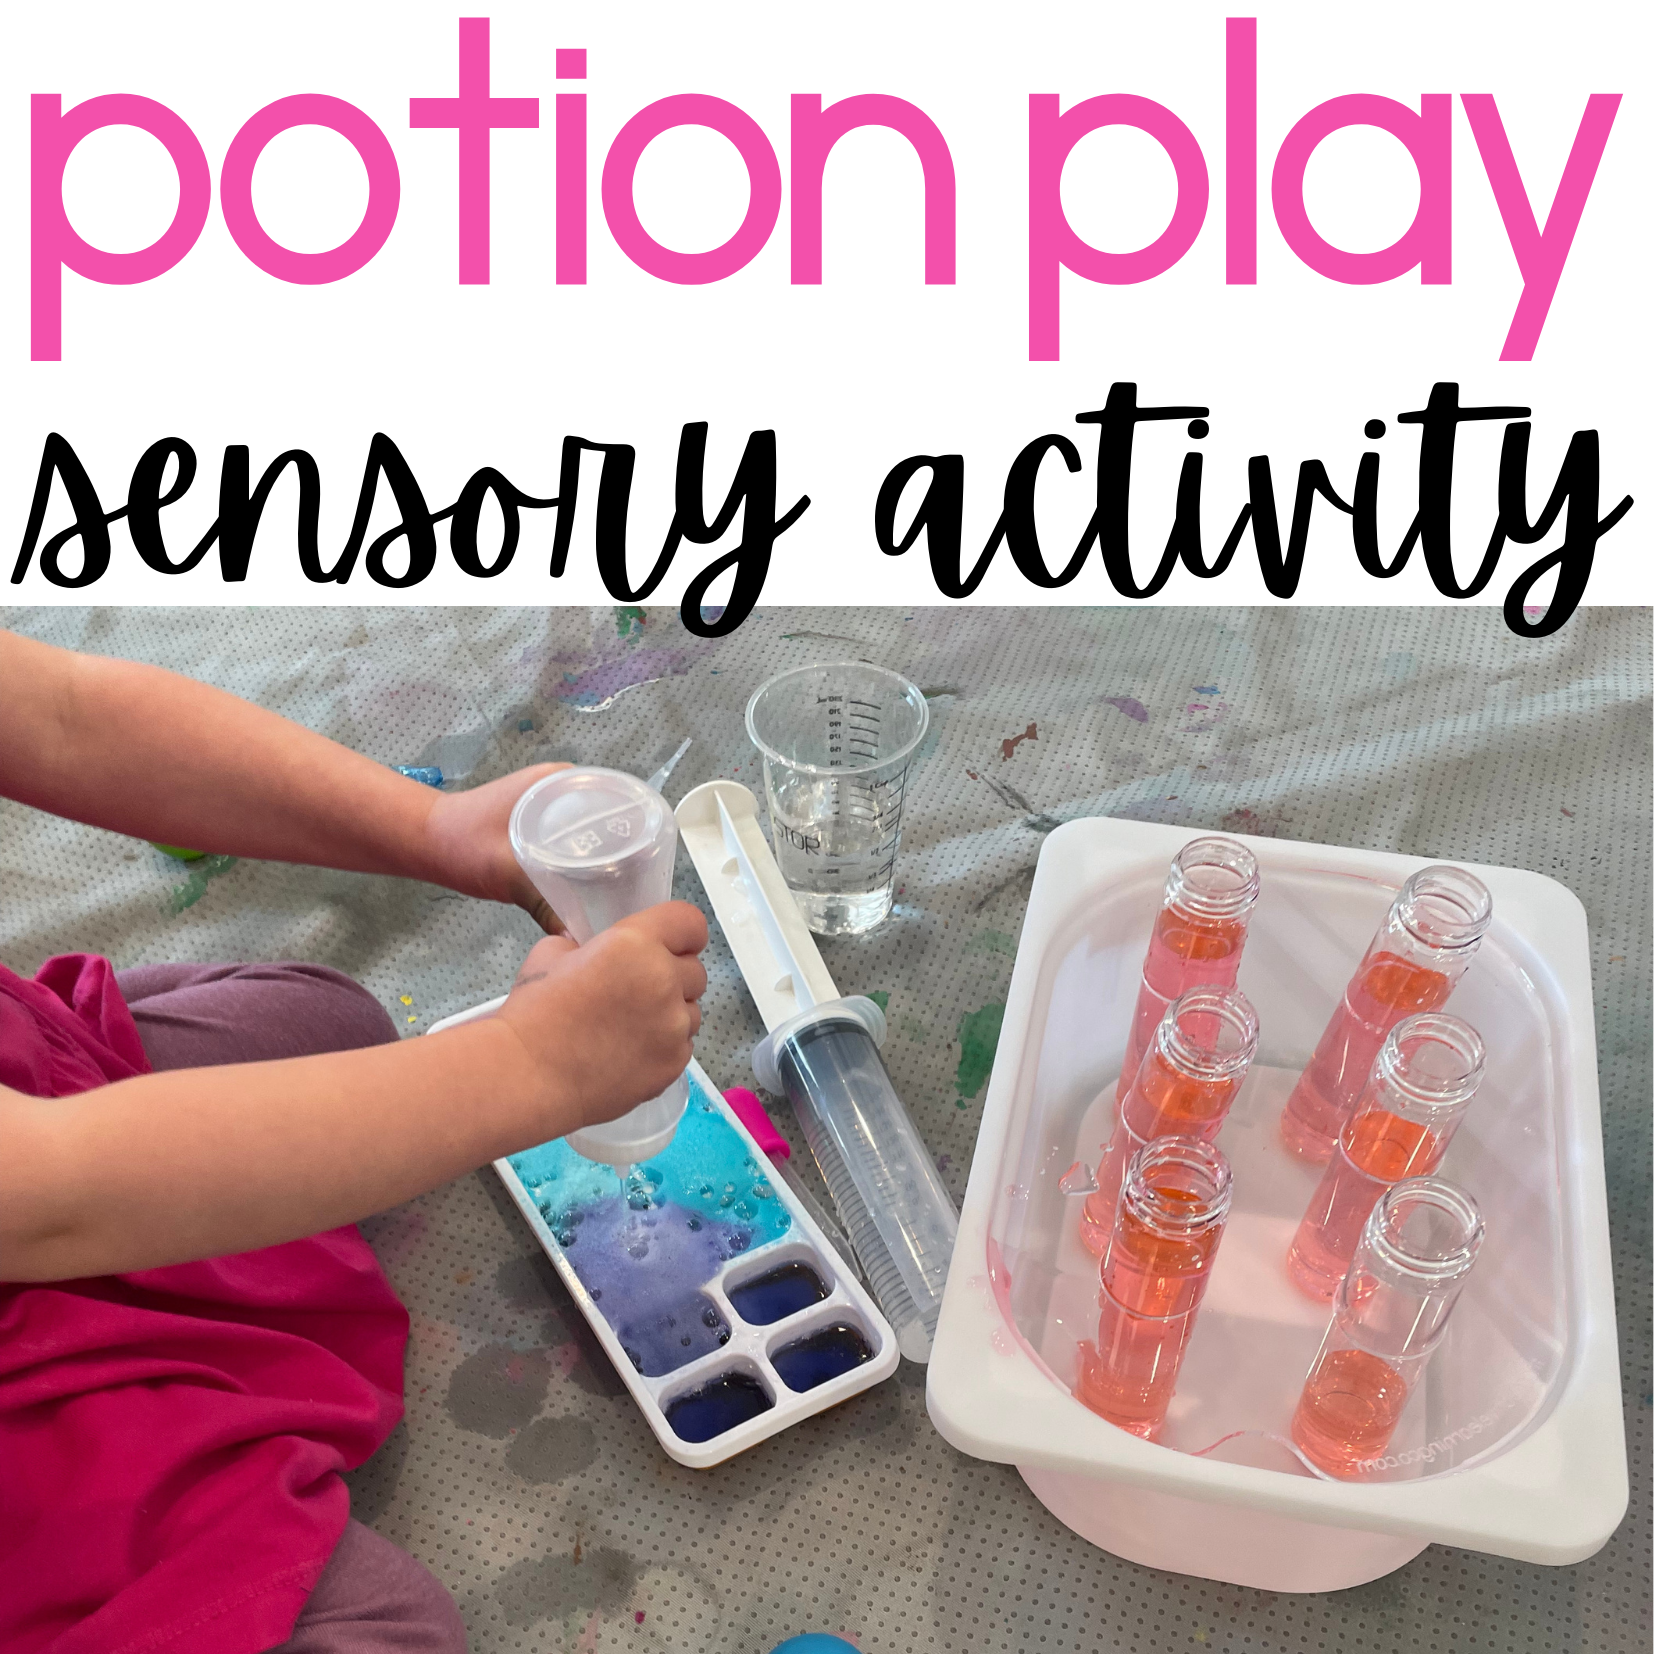 Potion Play Sensory Activity